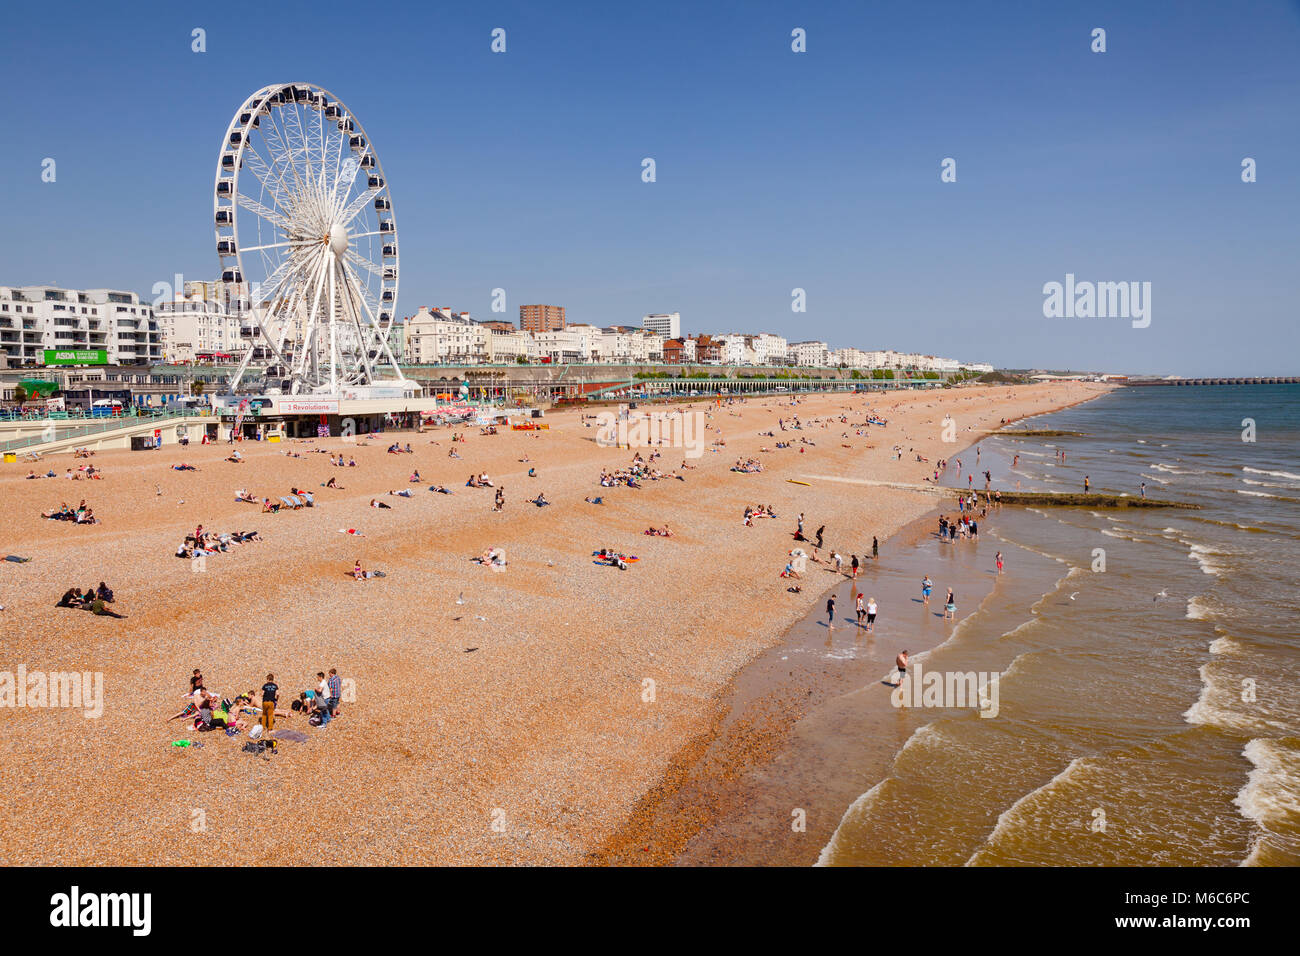 BRIGHTON, UK-Jun 5, 2013: Blick entlang der Strandpromenade von Brighton mit dem Riesenrad Promenade und Urlauber am Kiesstrand im Bild von der Hell Stockfoto